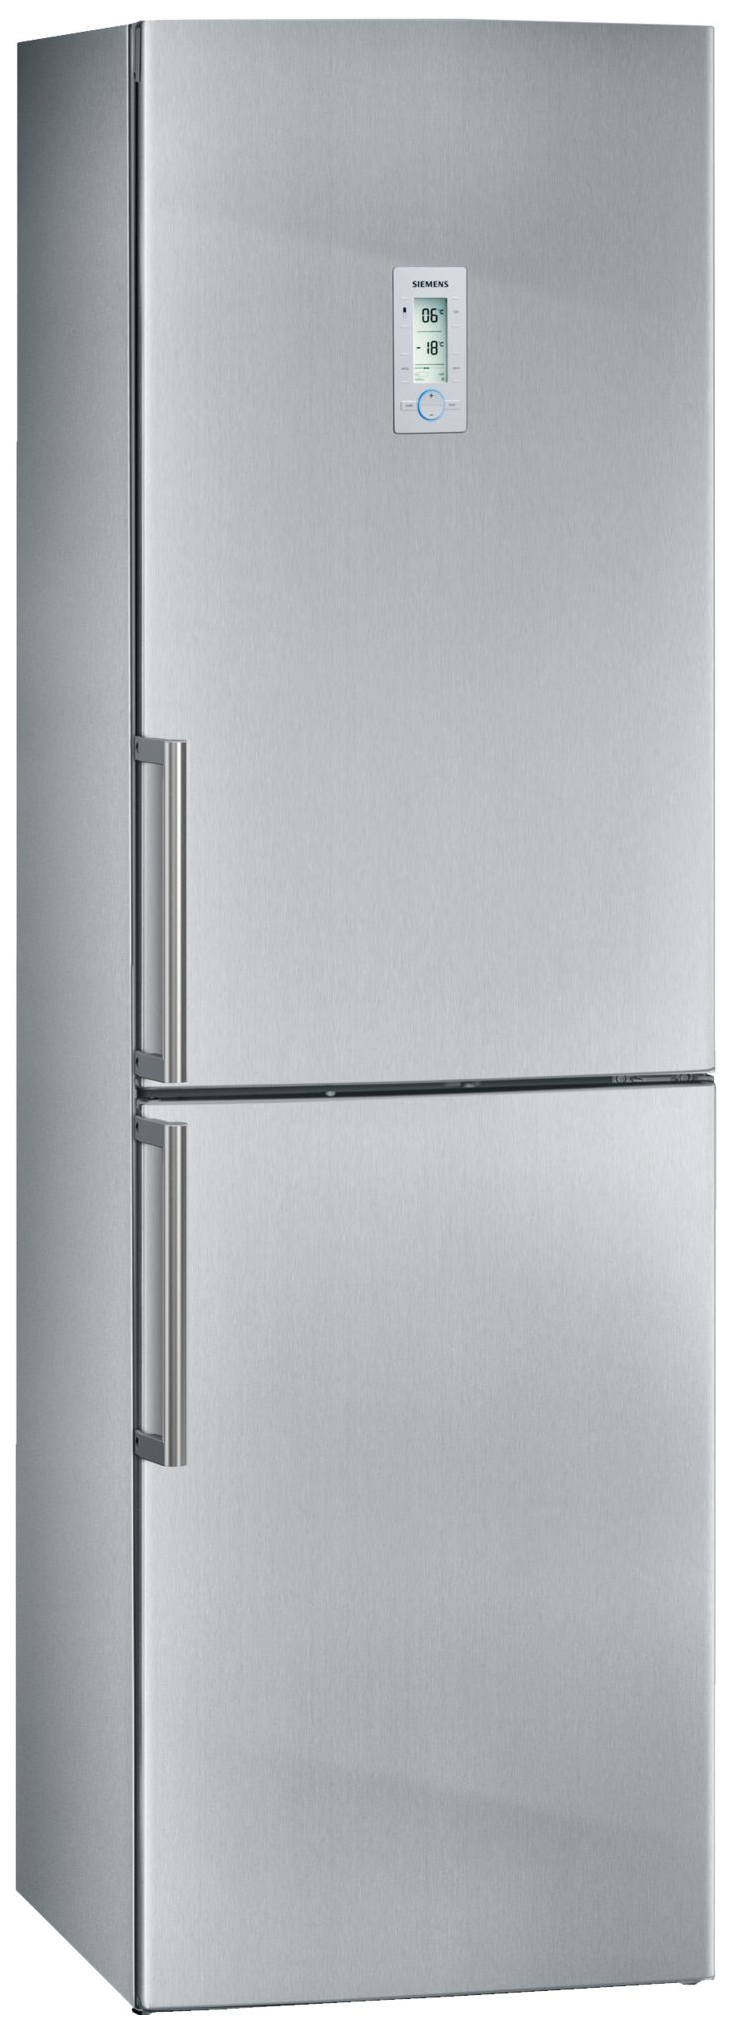 Холодильник Siemens KG39NAI26R серебристый аккумулятор для siemens gigaset m2 m3 v30145 k1310 x398